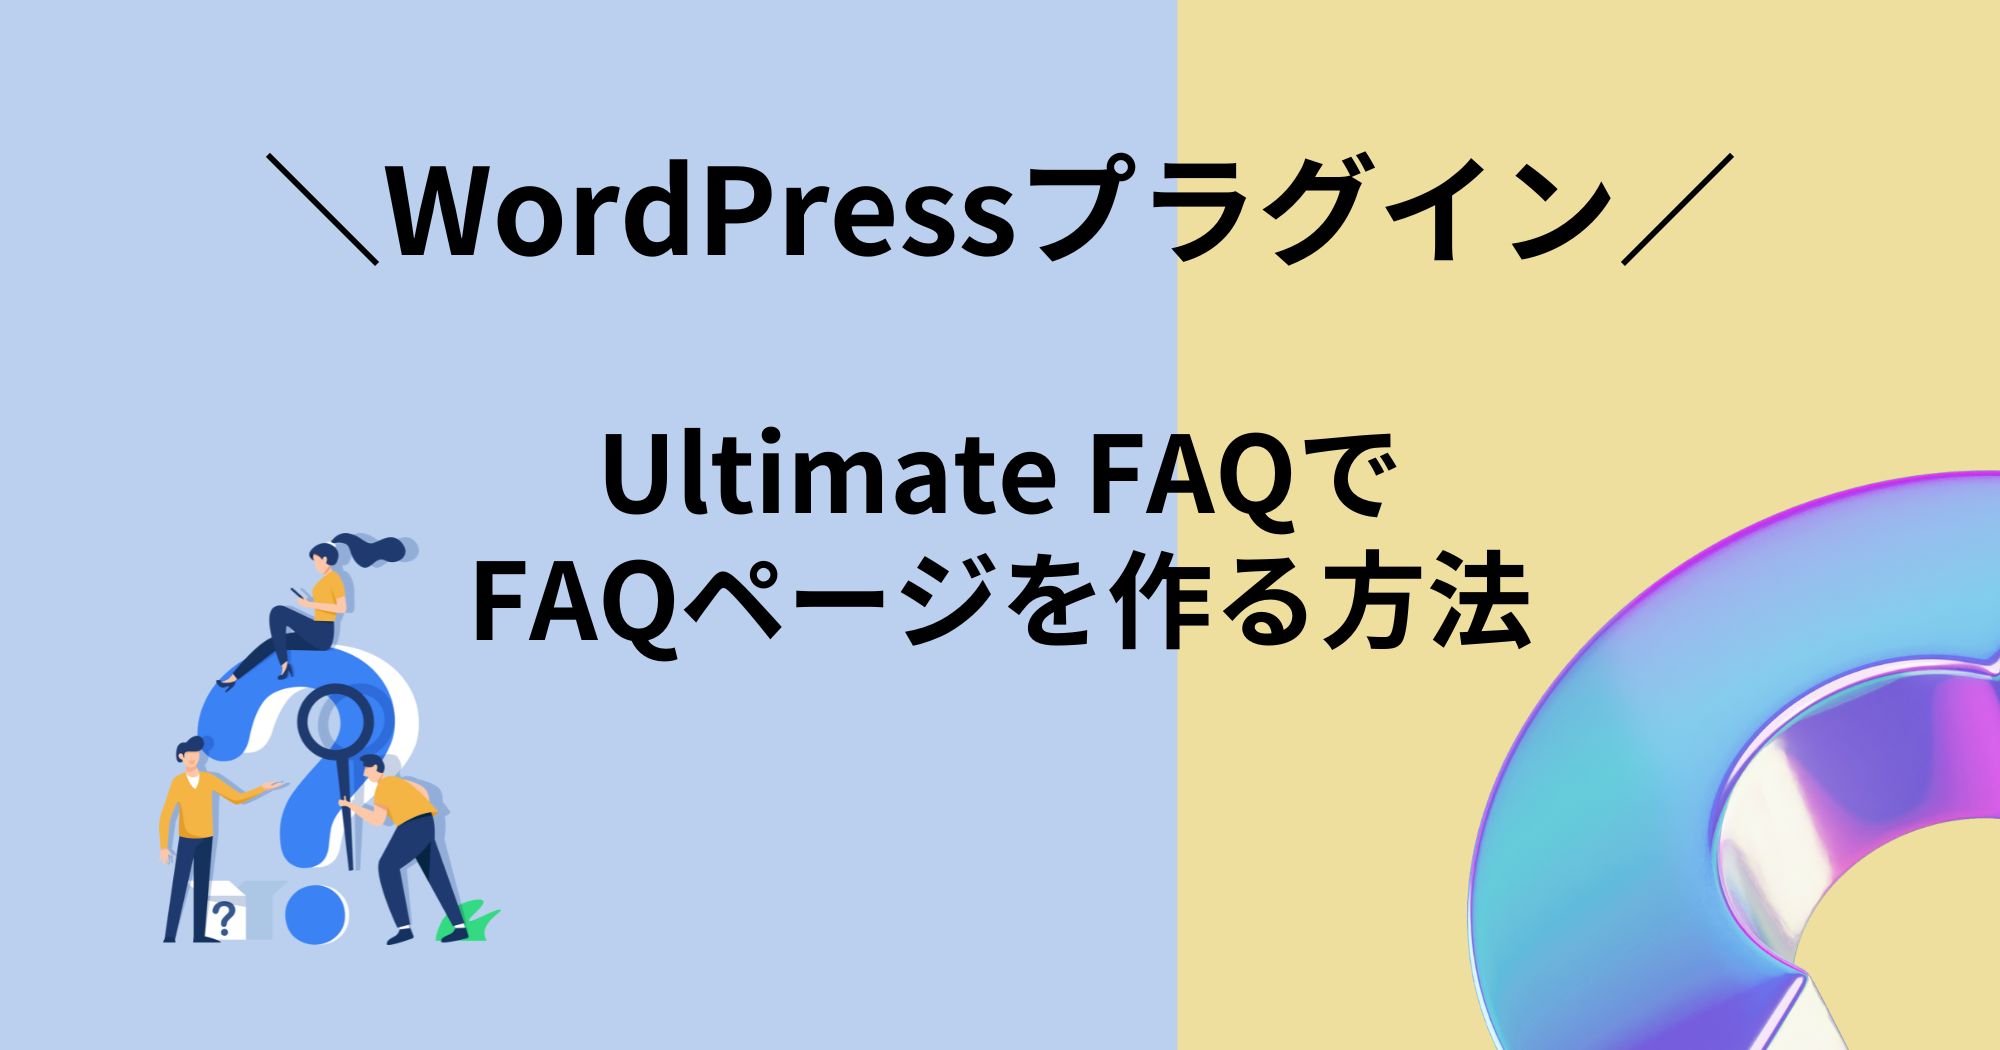 FAQページの作成に便利なWordPressプラグイン「Ultimate FAQ」